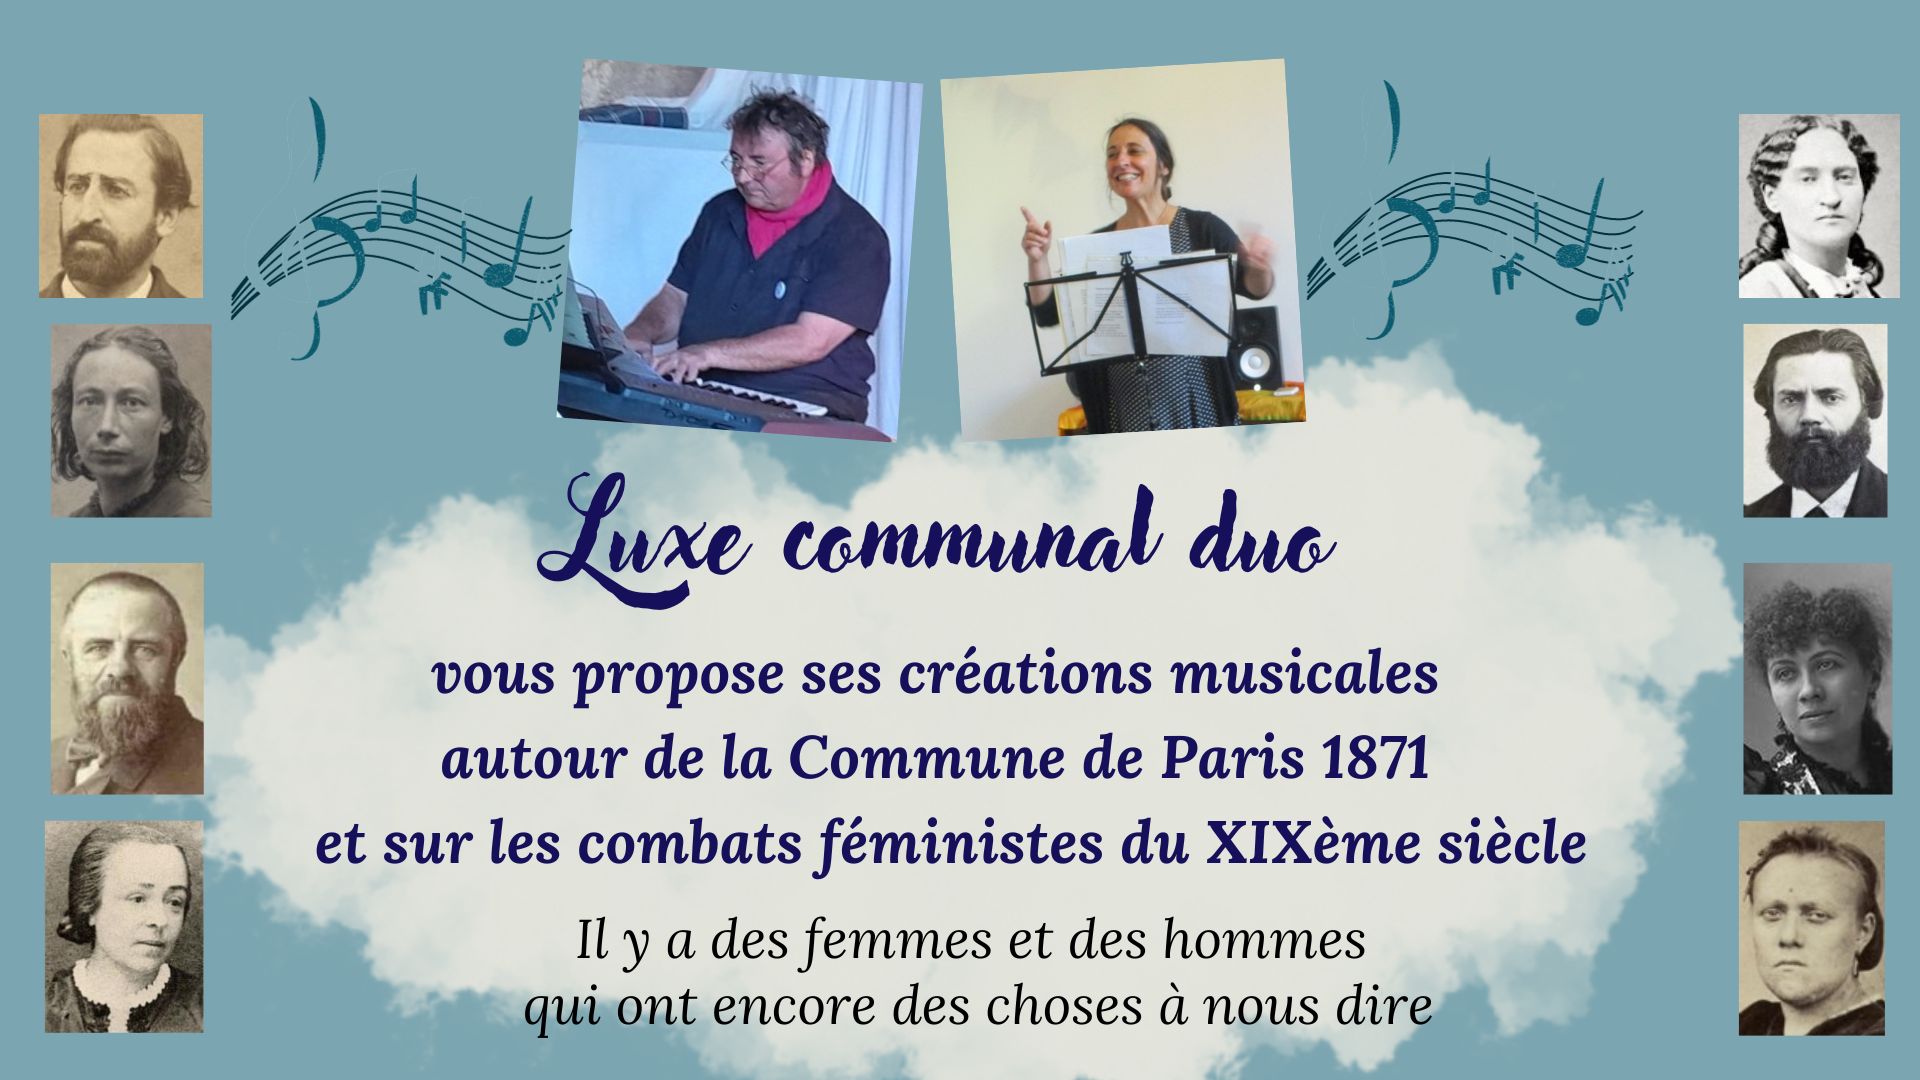 CD du Luxe Communal duo, en 12 titres. Créations musicales de Sylvain Neveu, chantées par Caroline Maigne-Neveu. Ce sont des chansons originales.